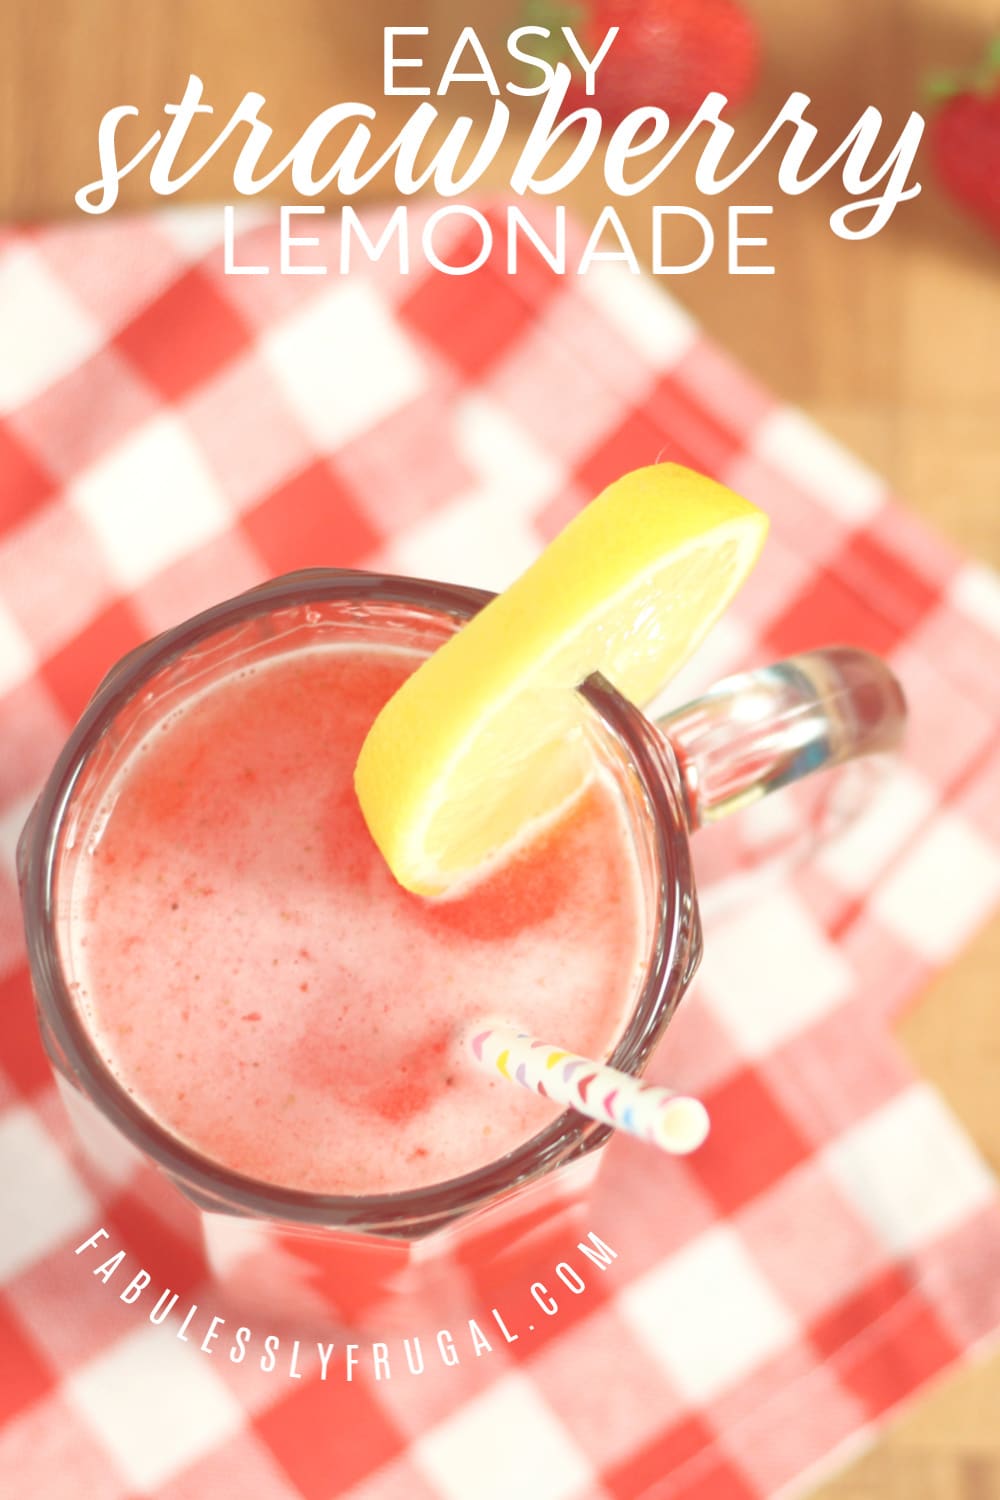 Homemade strawberry lemonade recipe